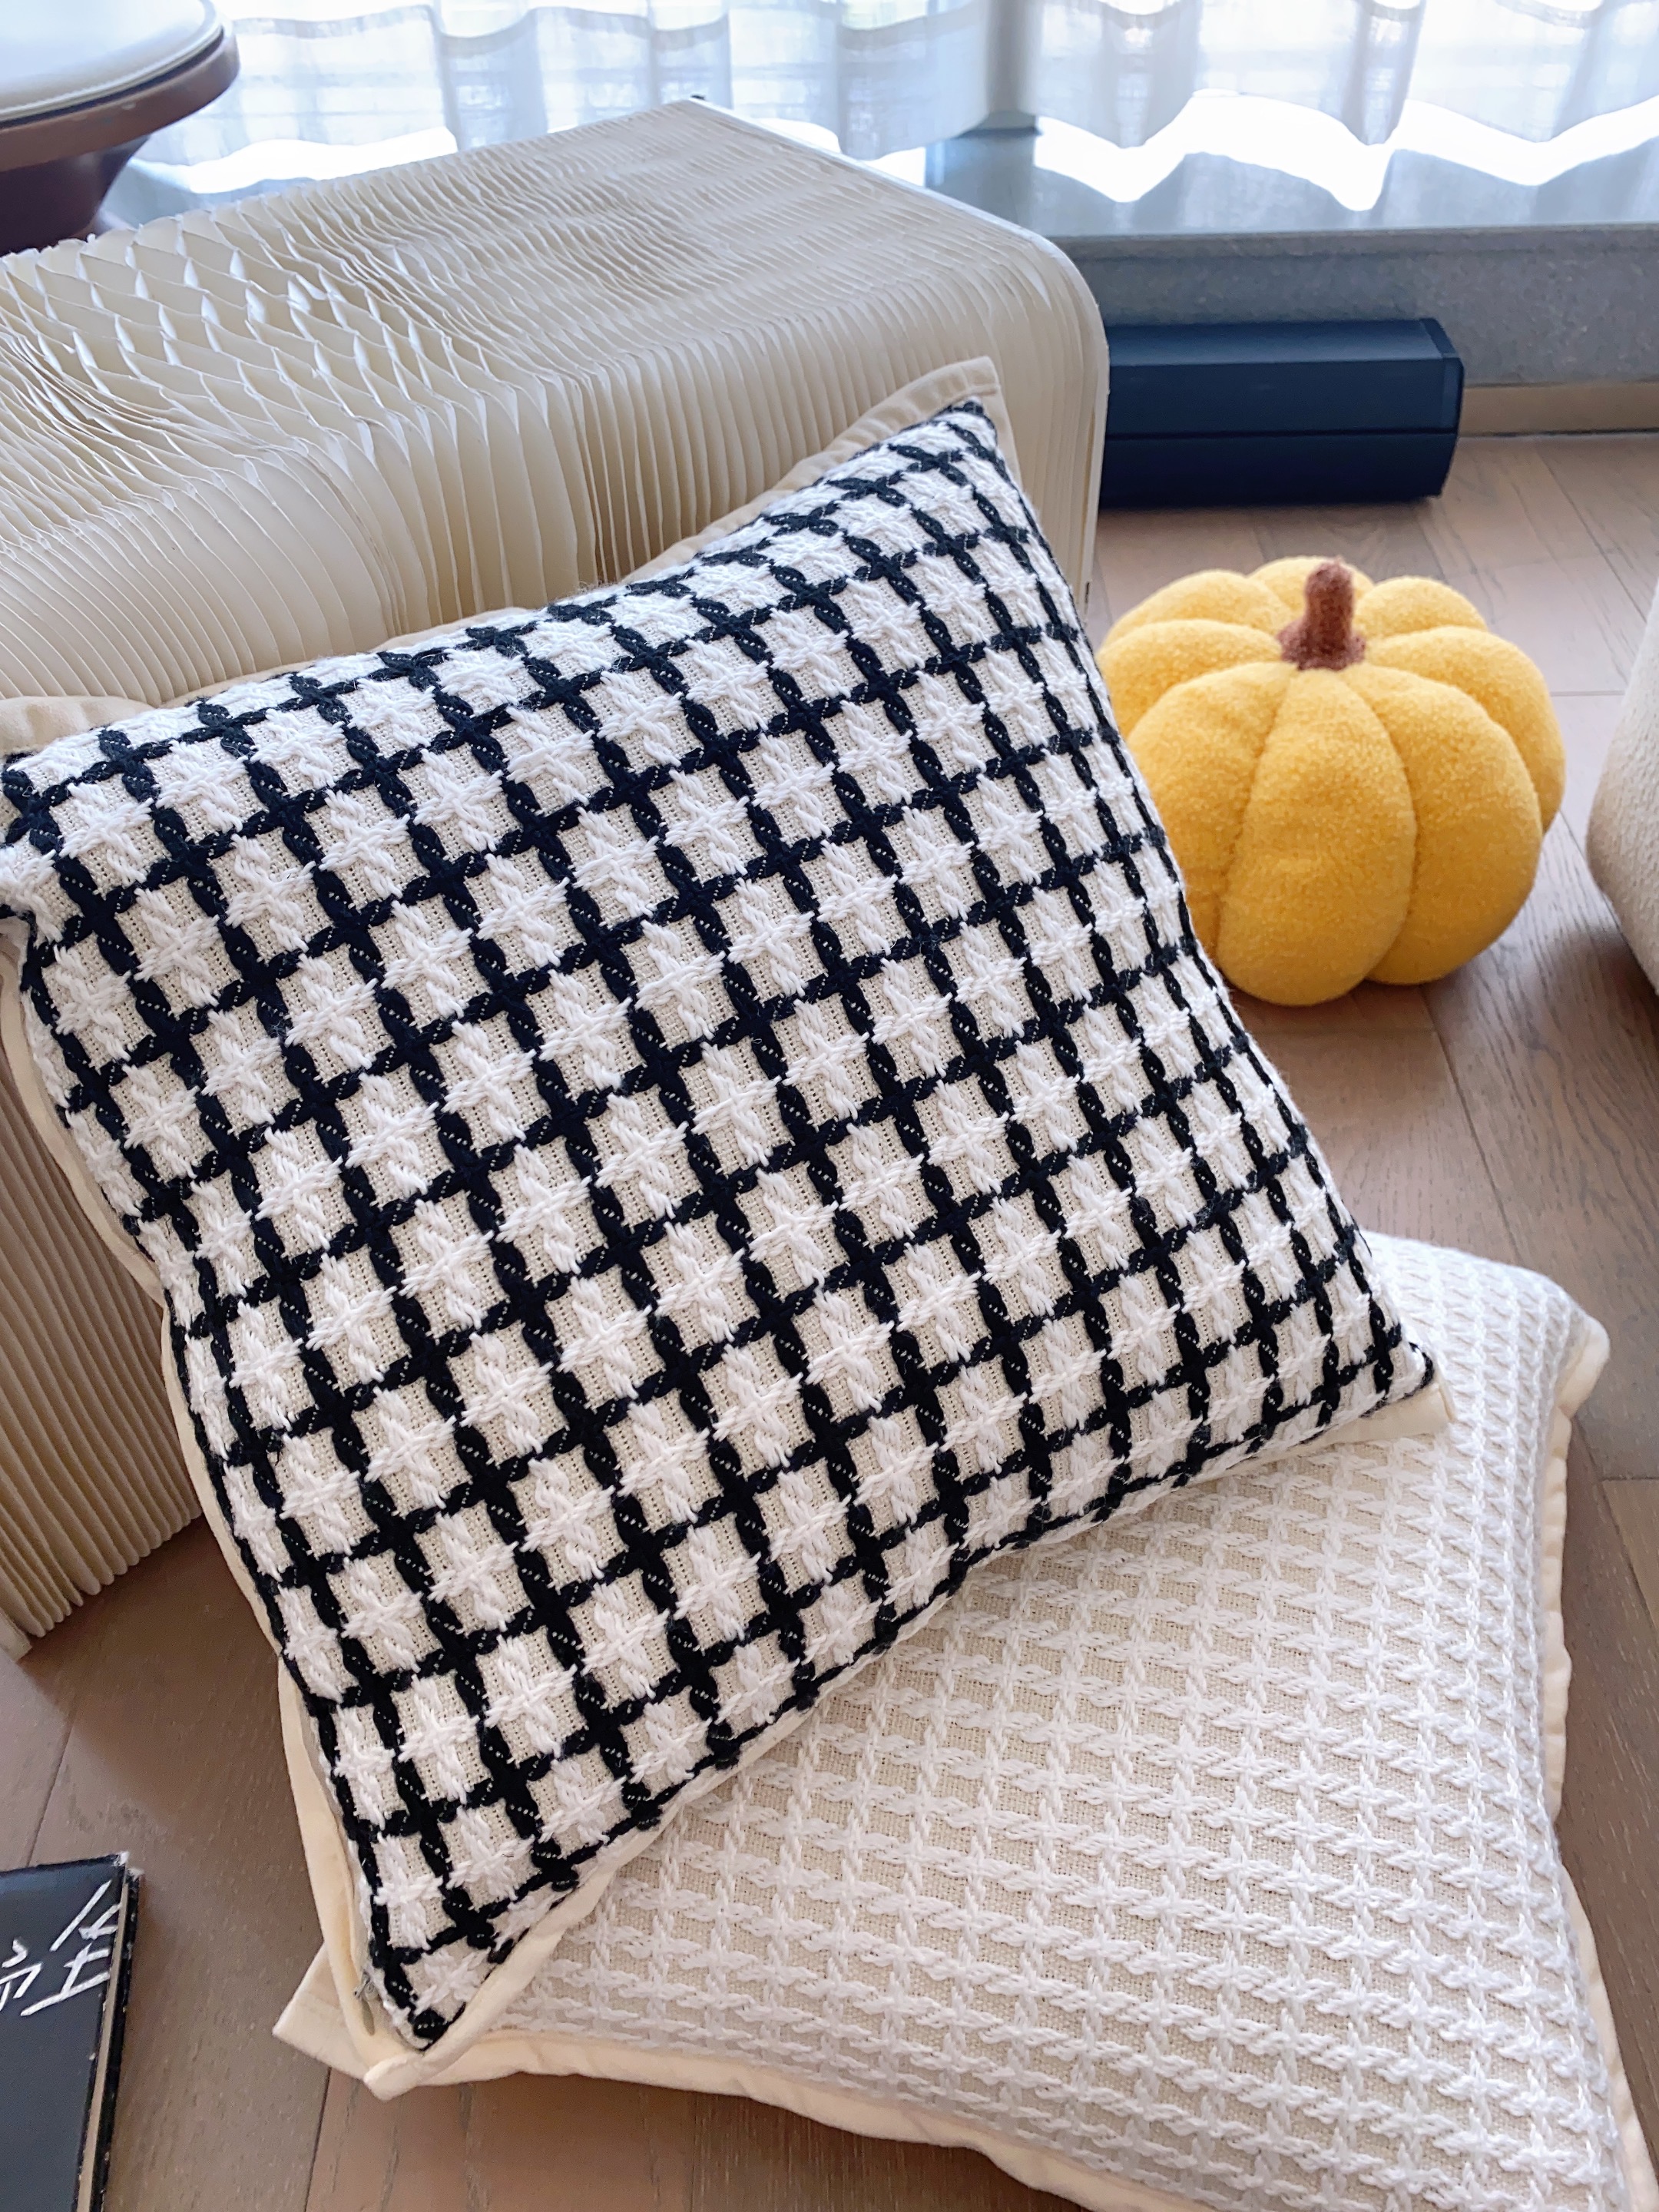 簡約現代風格格子抱枕混紡材質適合客廳午睡使用